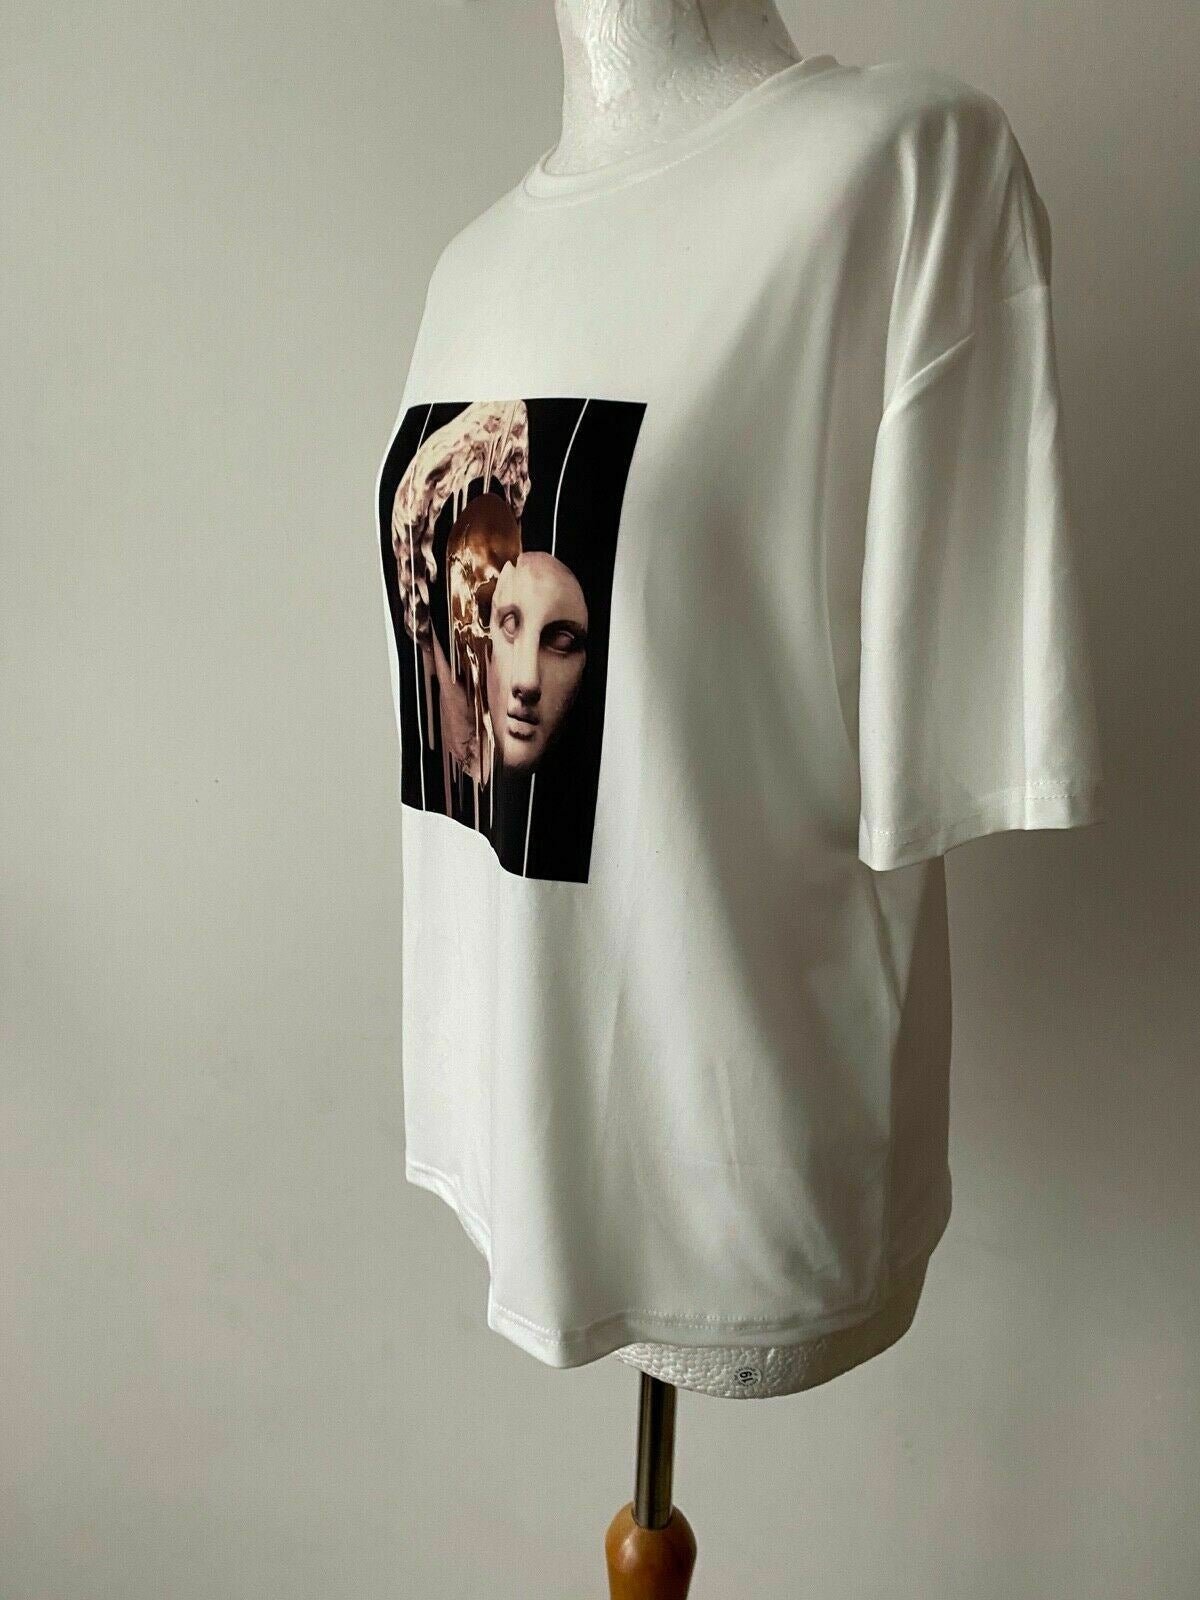 Joom Medusa Print White T-Shirt Size M 10